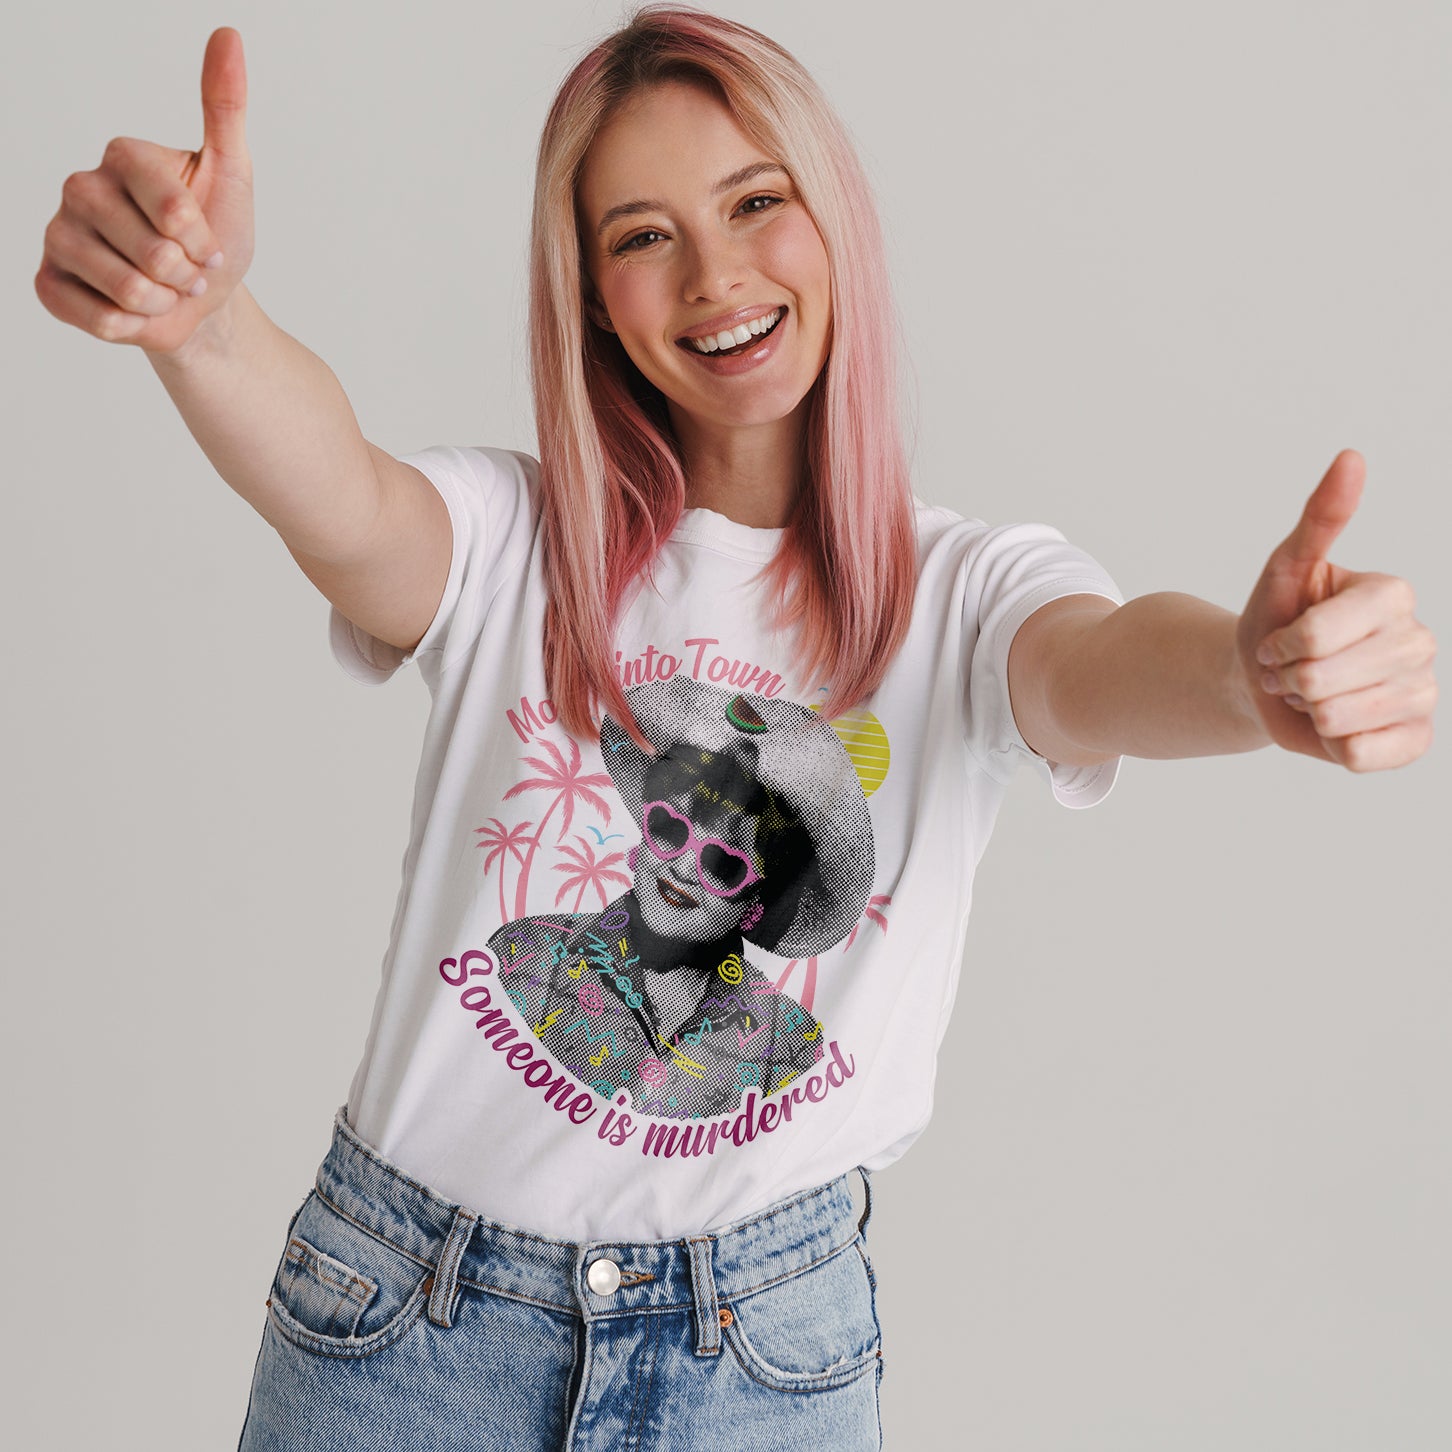 T-Shirt Jessica Fletcher Summer Edition - Famous people - #chooseurcolor - CUC chooseurcolor